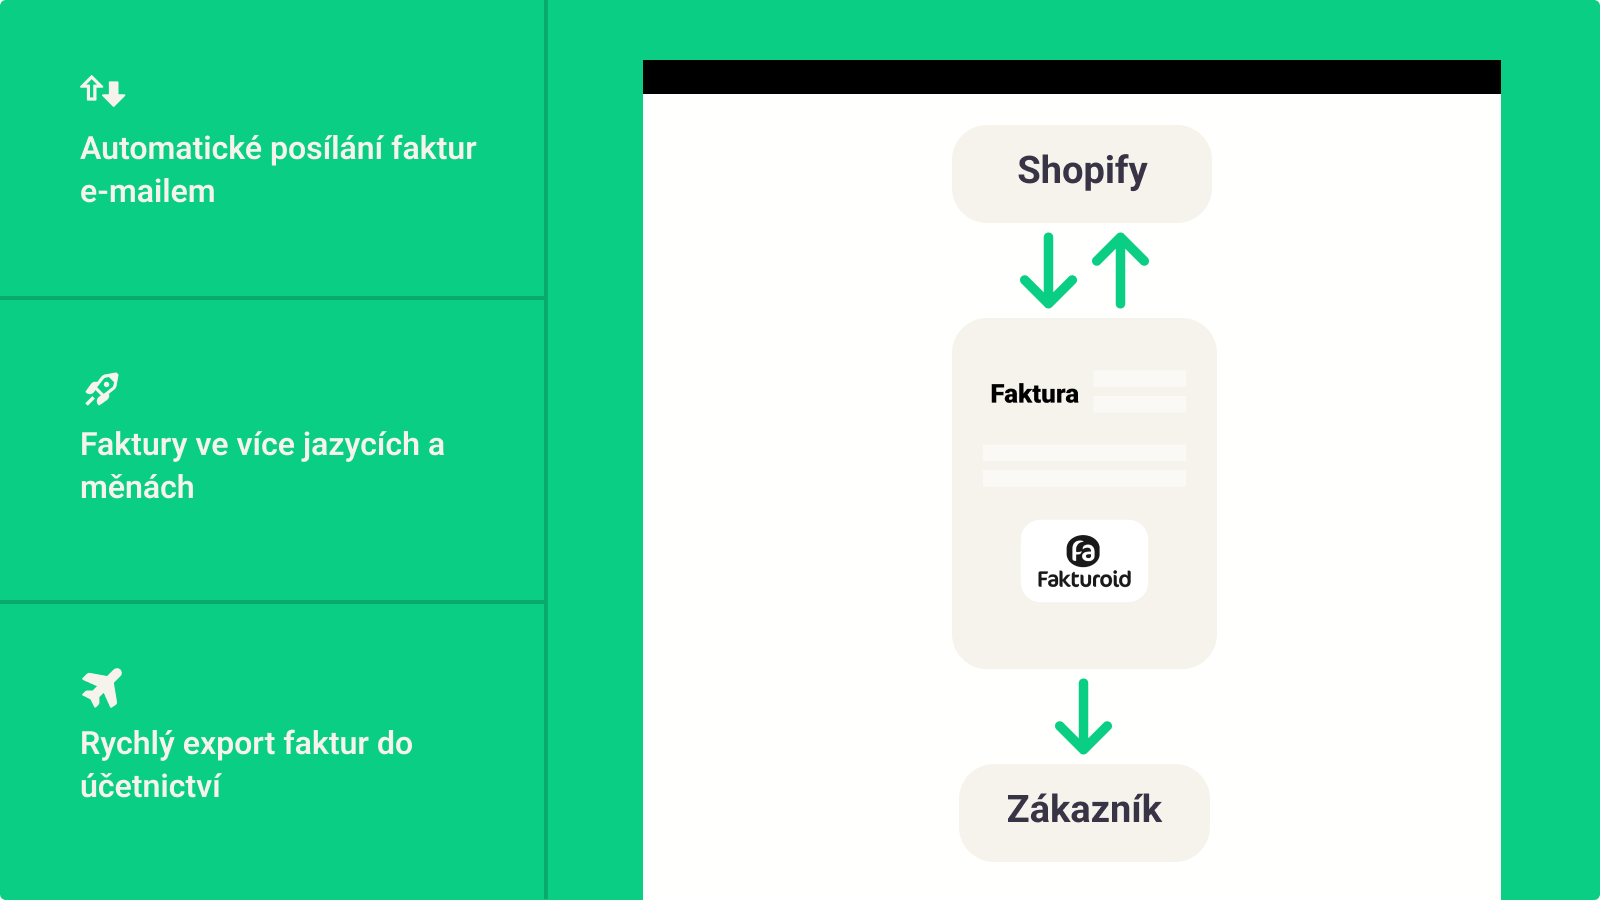 Webfaktura pro zákazníka po napojení fakturoidu na Shopify